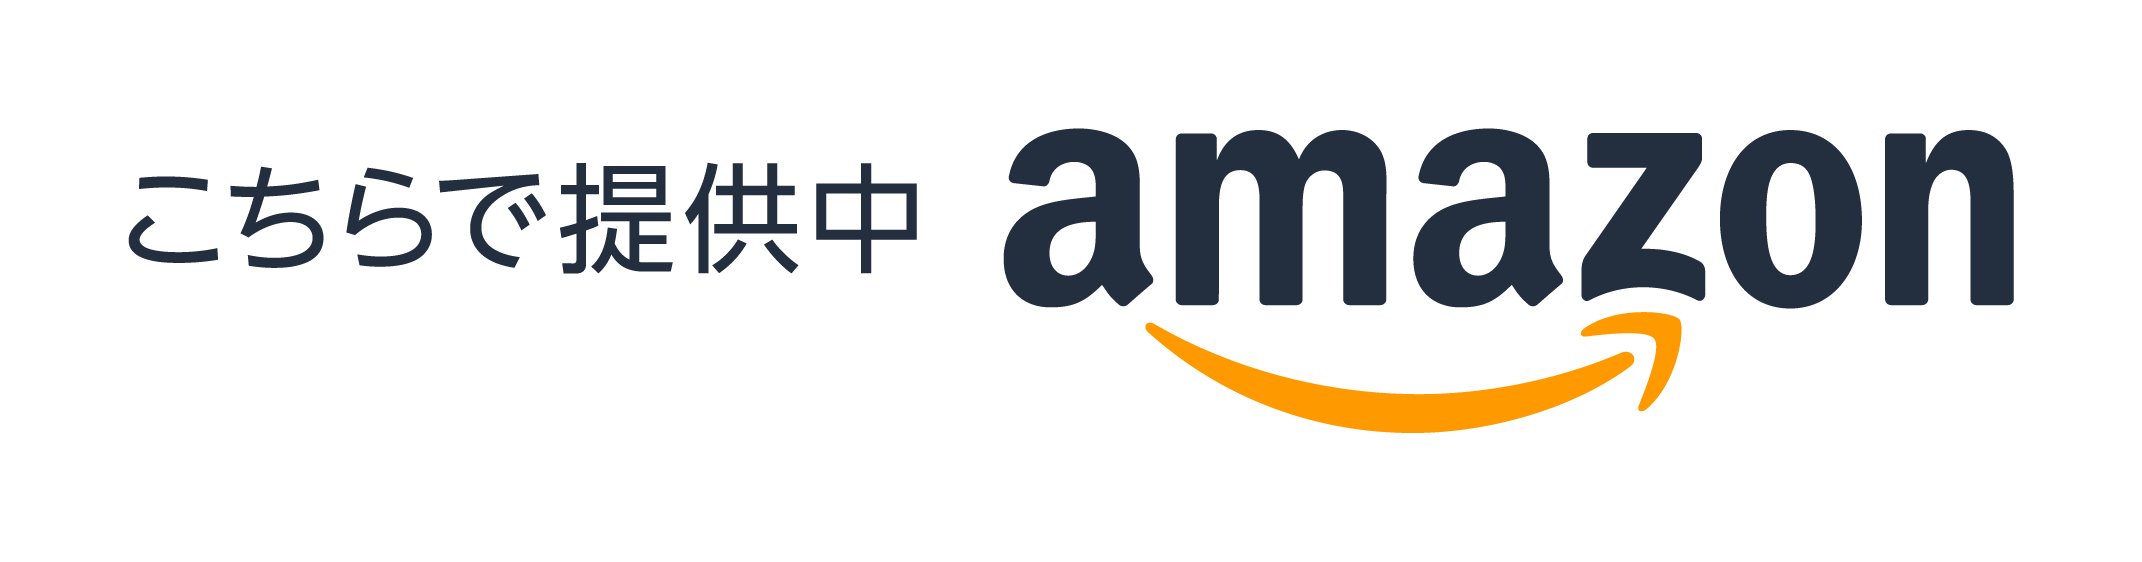 Amazon.co.jp ロゴ